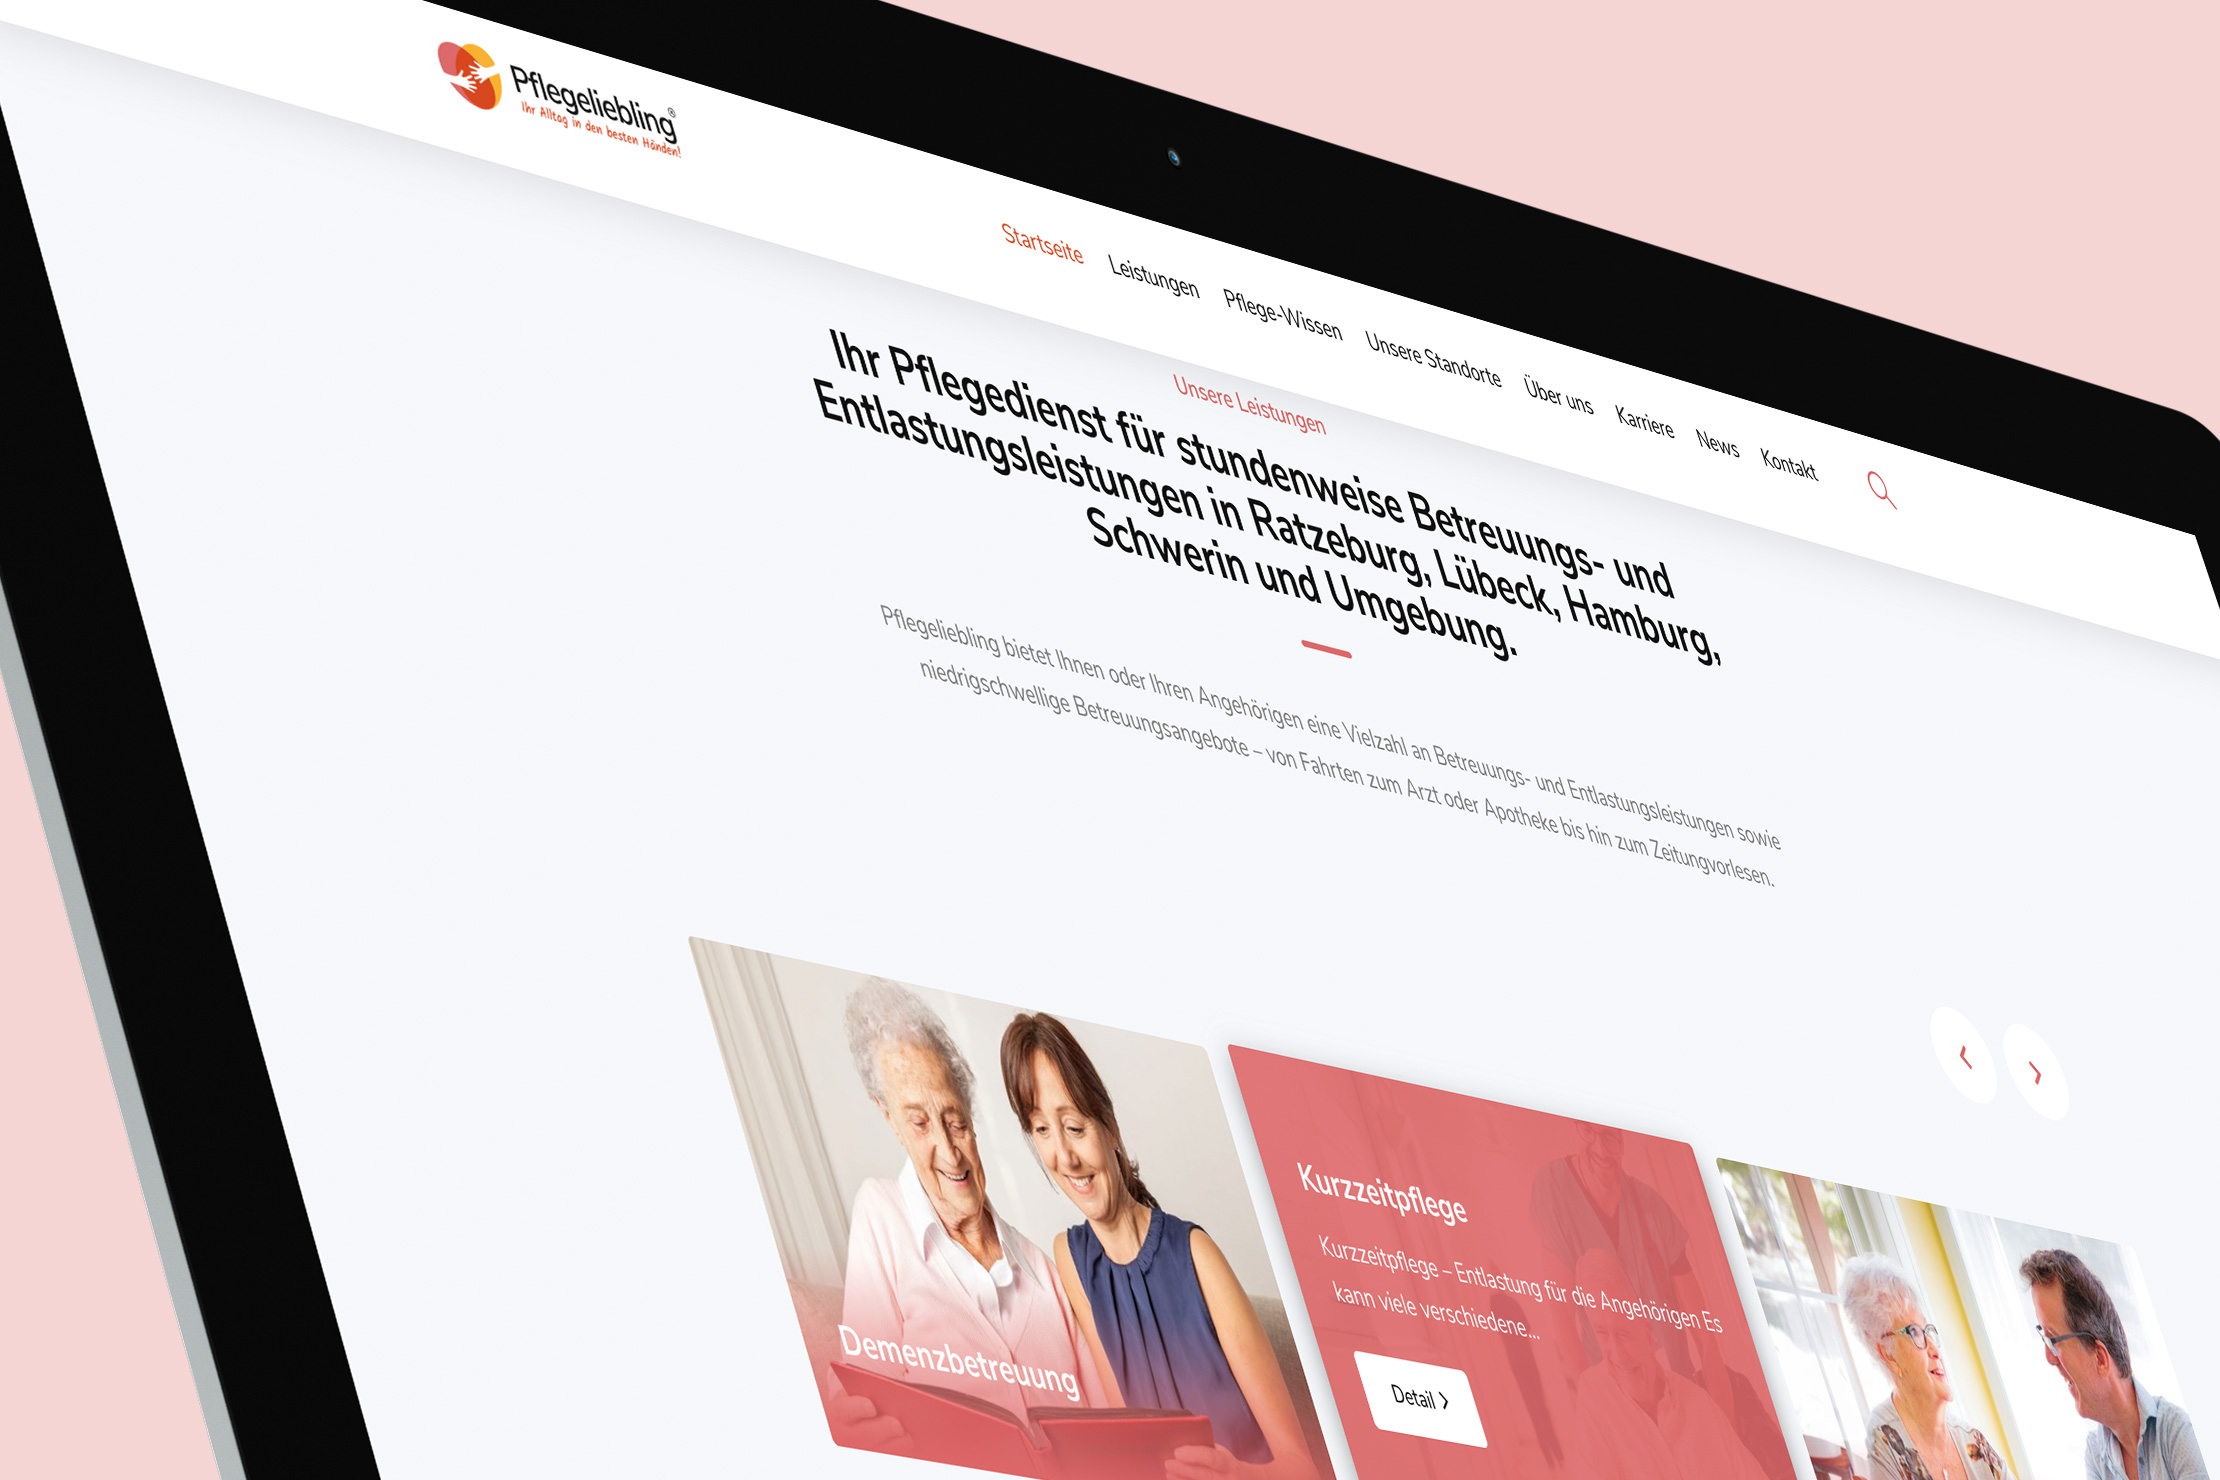 Markenentwicklung und Websiteentwicklung mit Responsive Webdesign für Pflegeliebling